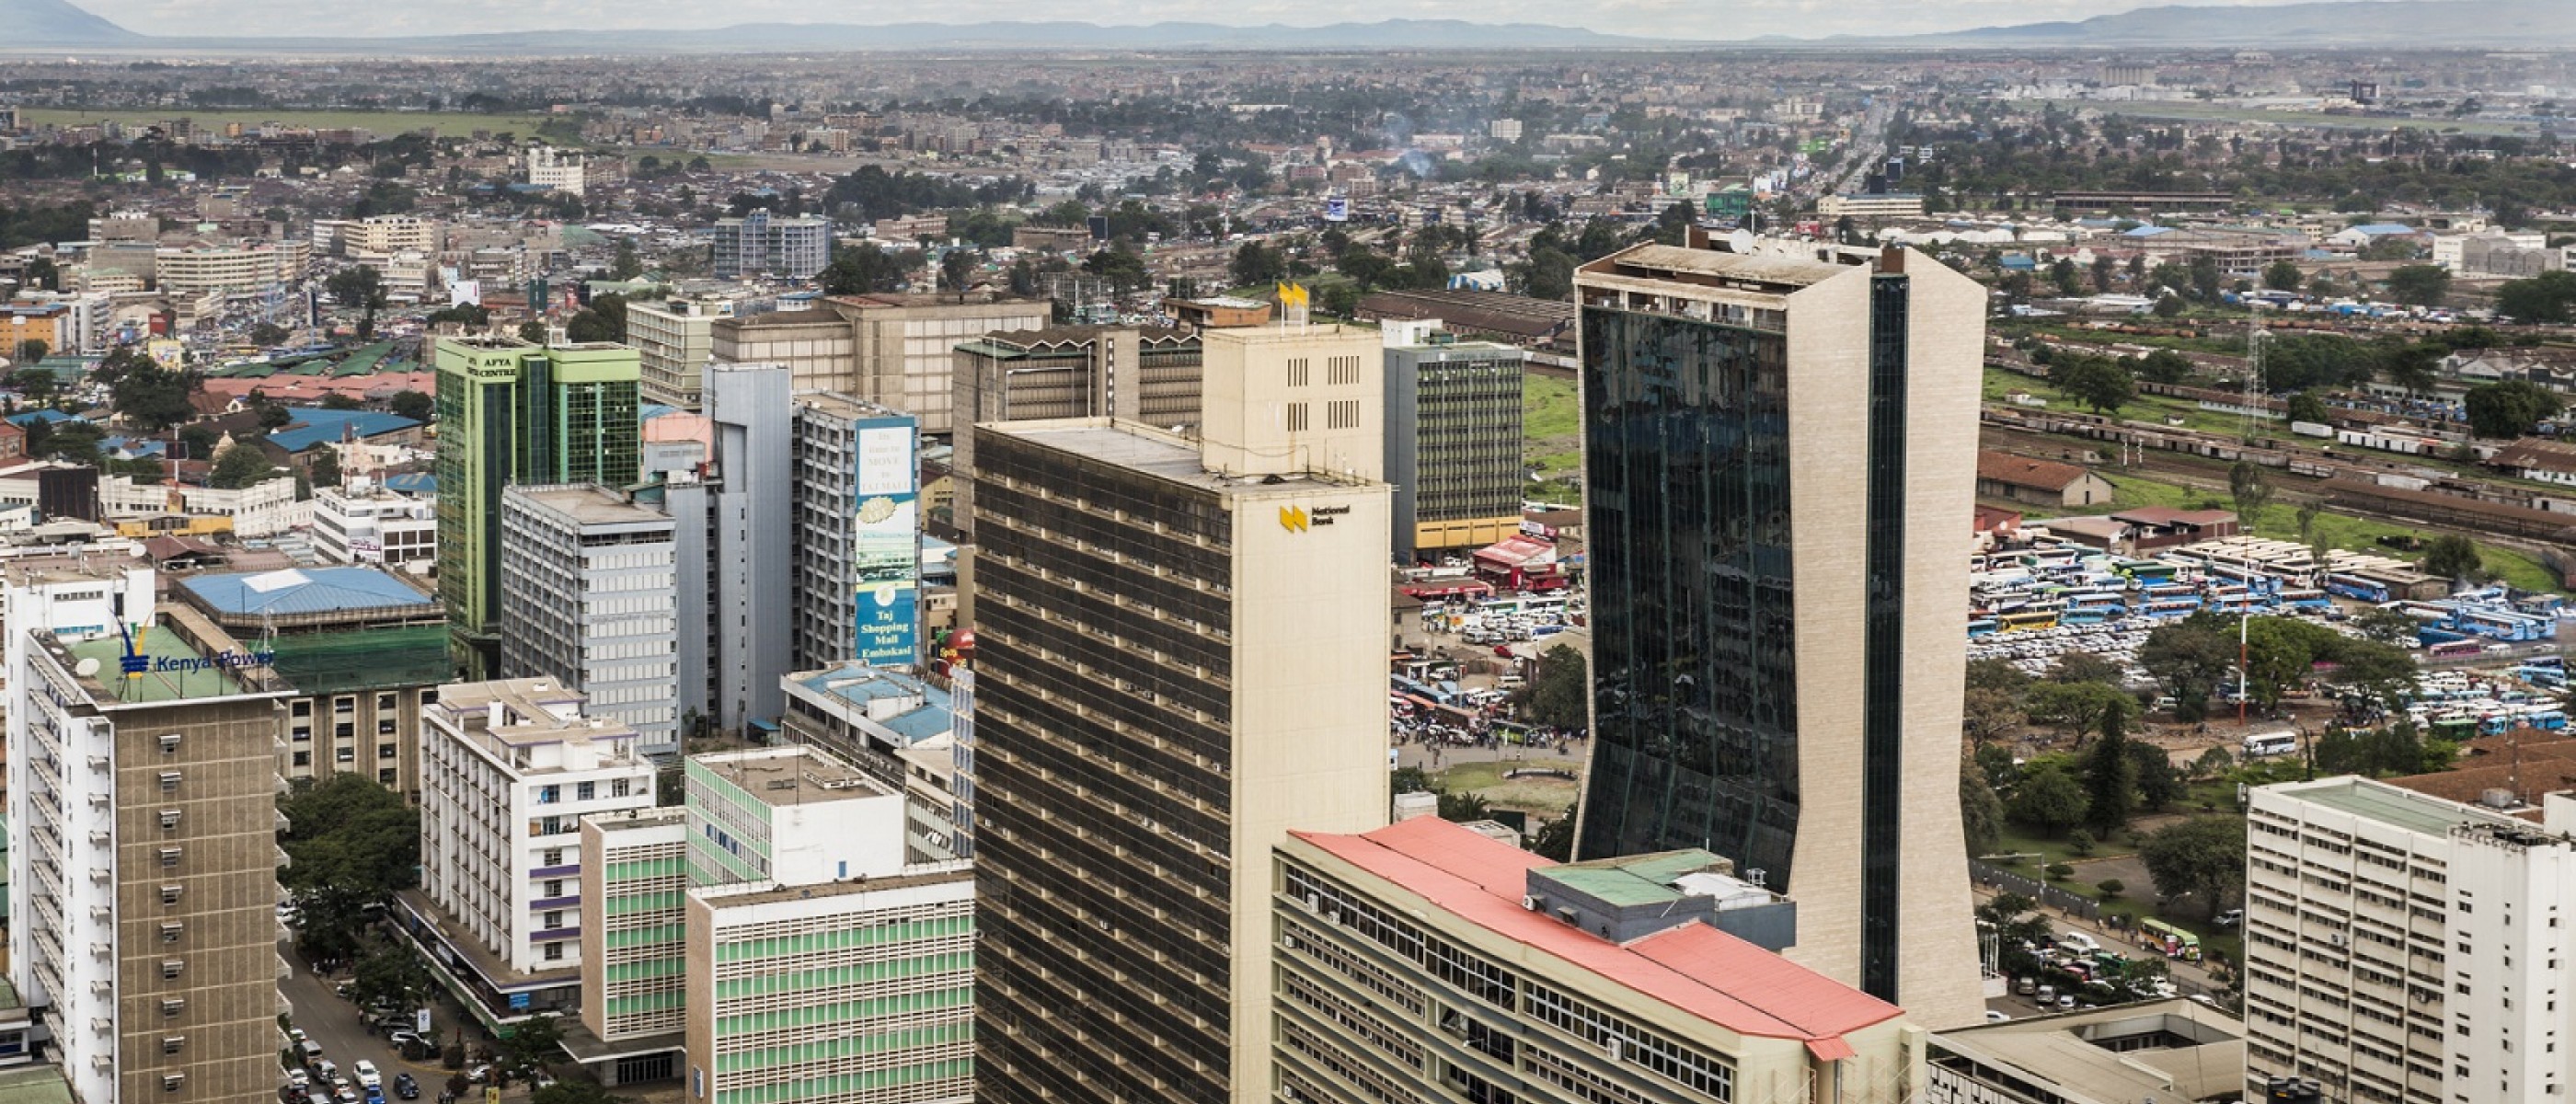 Африканская столица 7. Найроби (столица Кении). Найроби (столица Кении) про город. Найроби Африка. Климат Найроби.